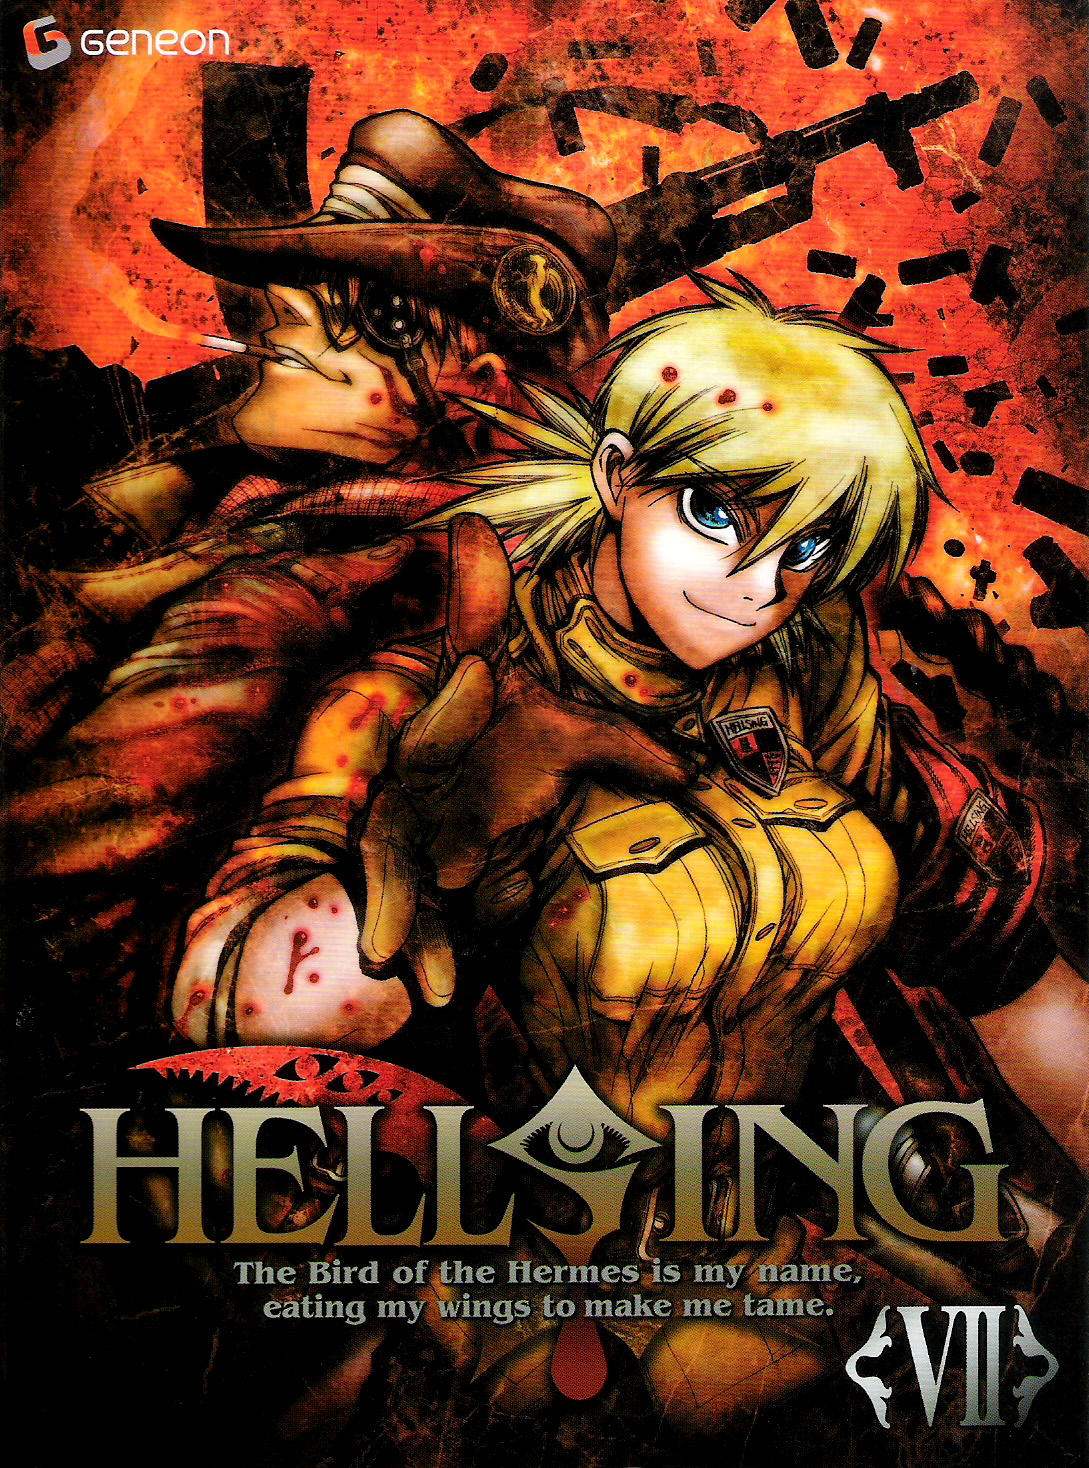 An-Drive: Hellsing Ultimate [OVA] [Legendado]